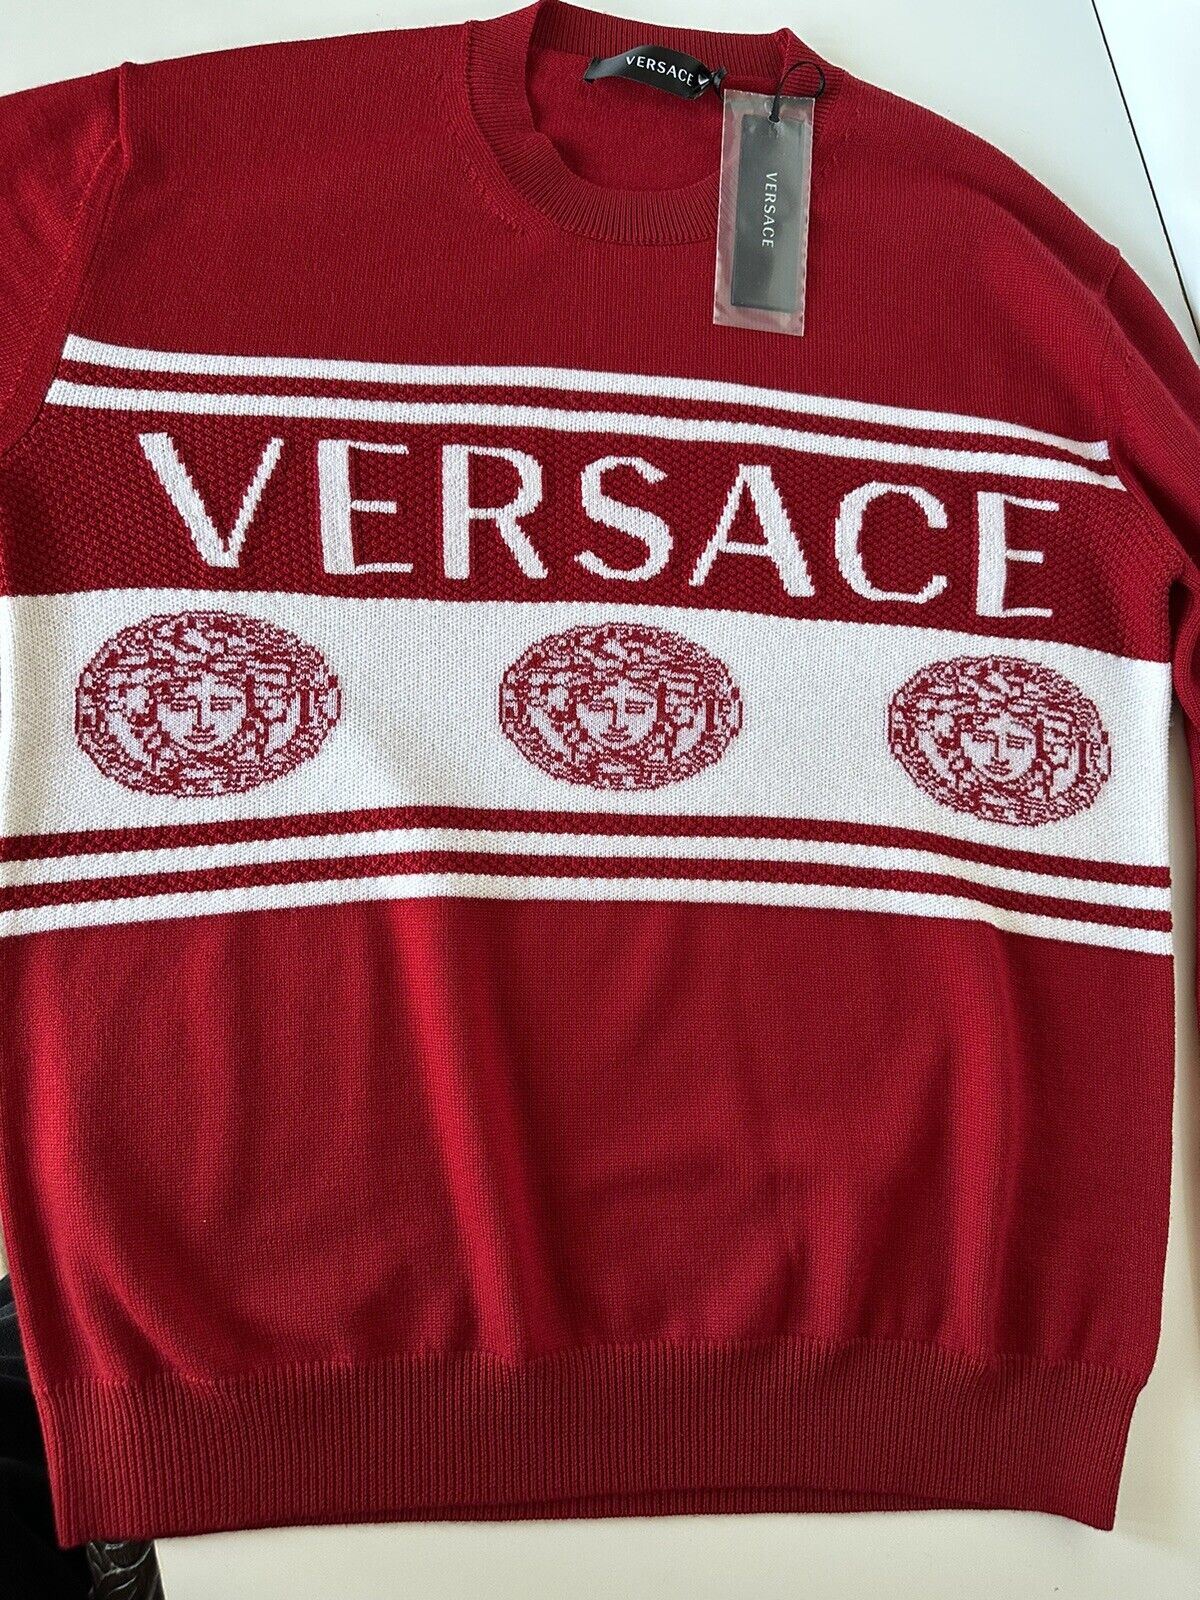 NWT $950 Versace Medusa Logo Шерстяной вязаный свитер Красный 48 (средний) Италия 1002719 